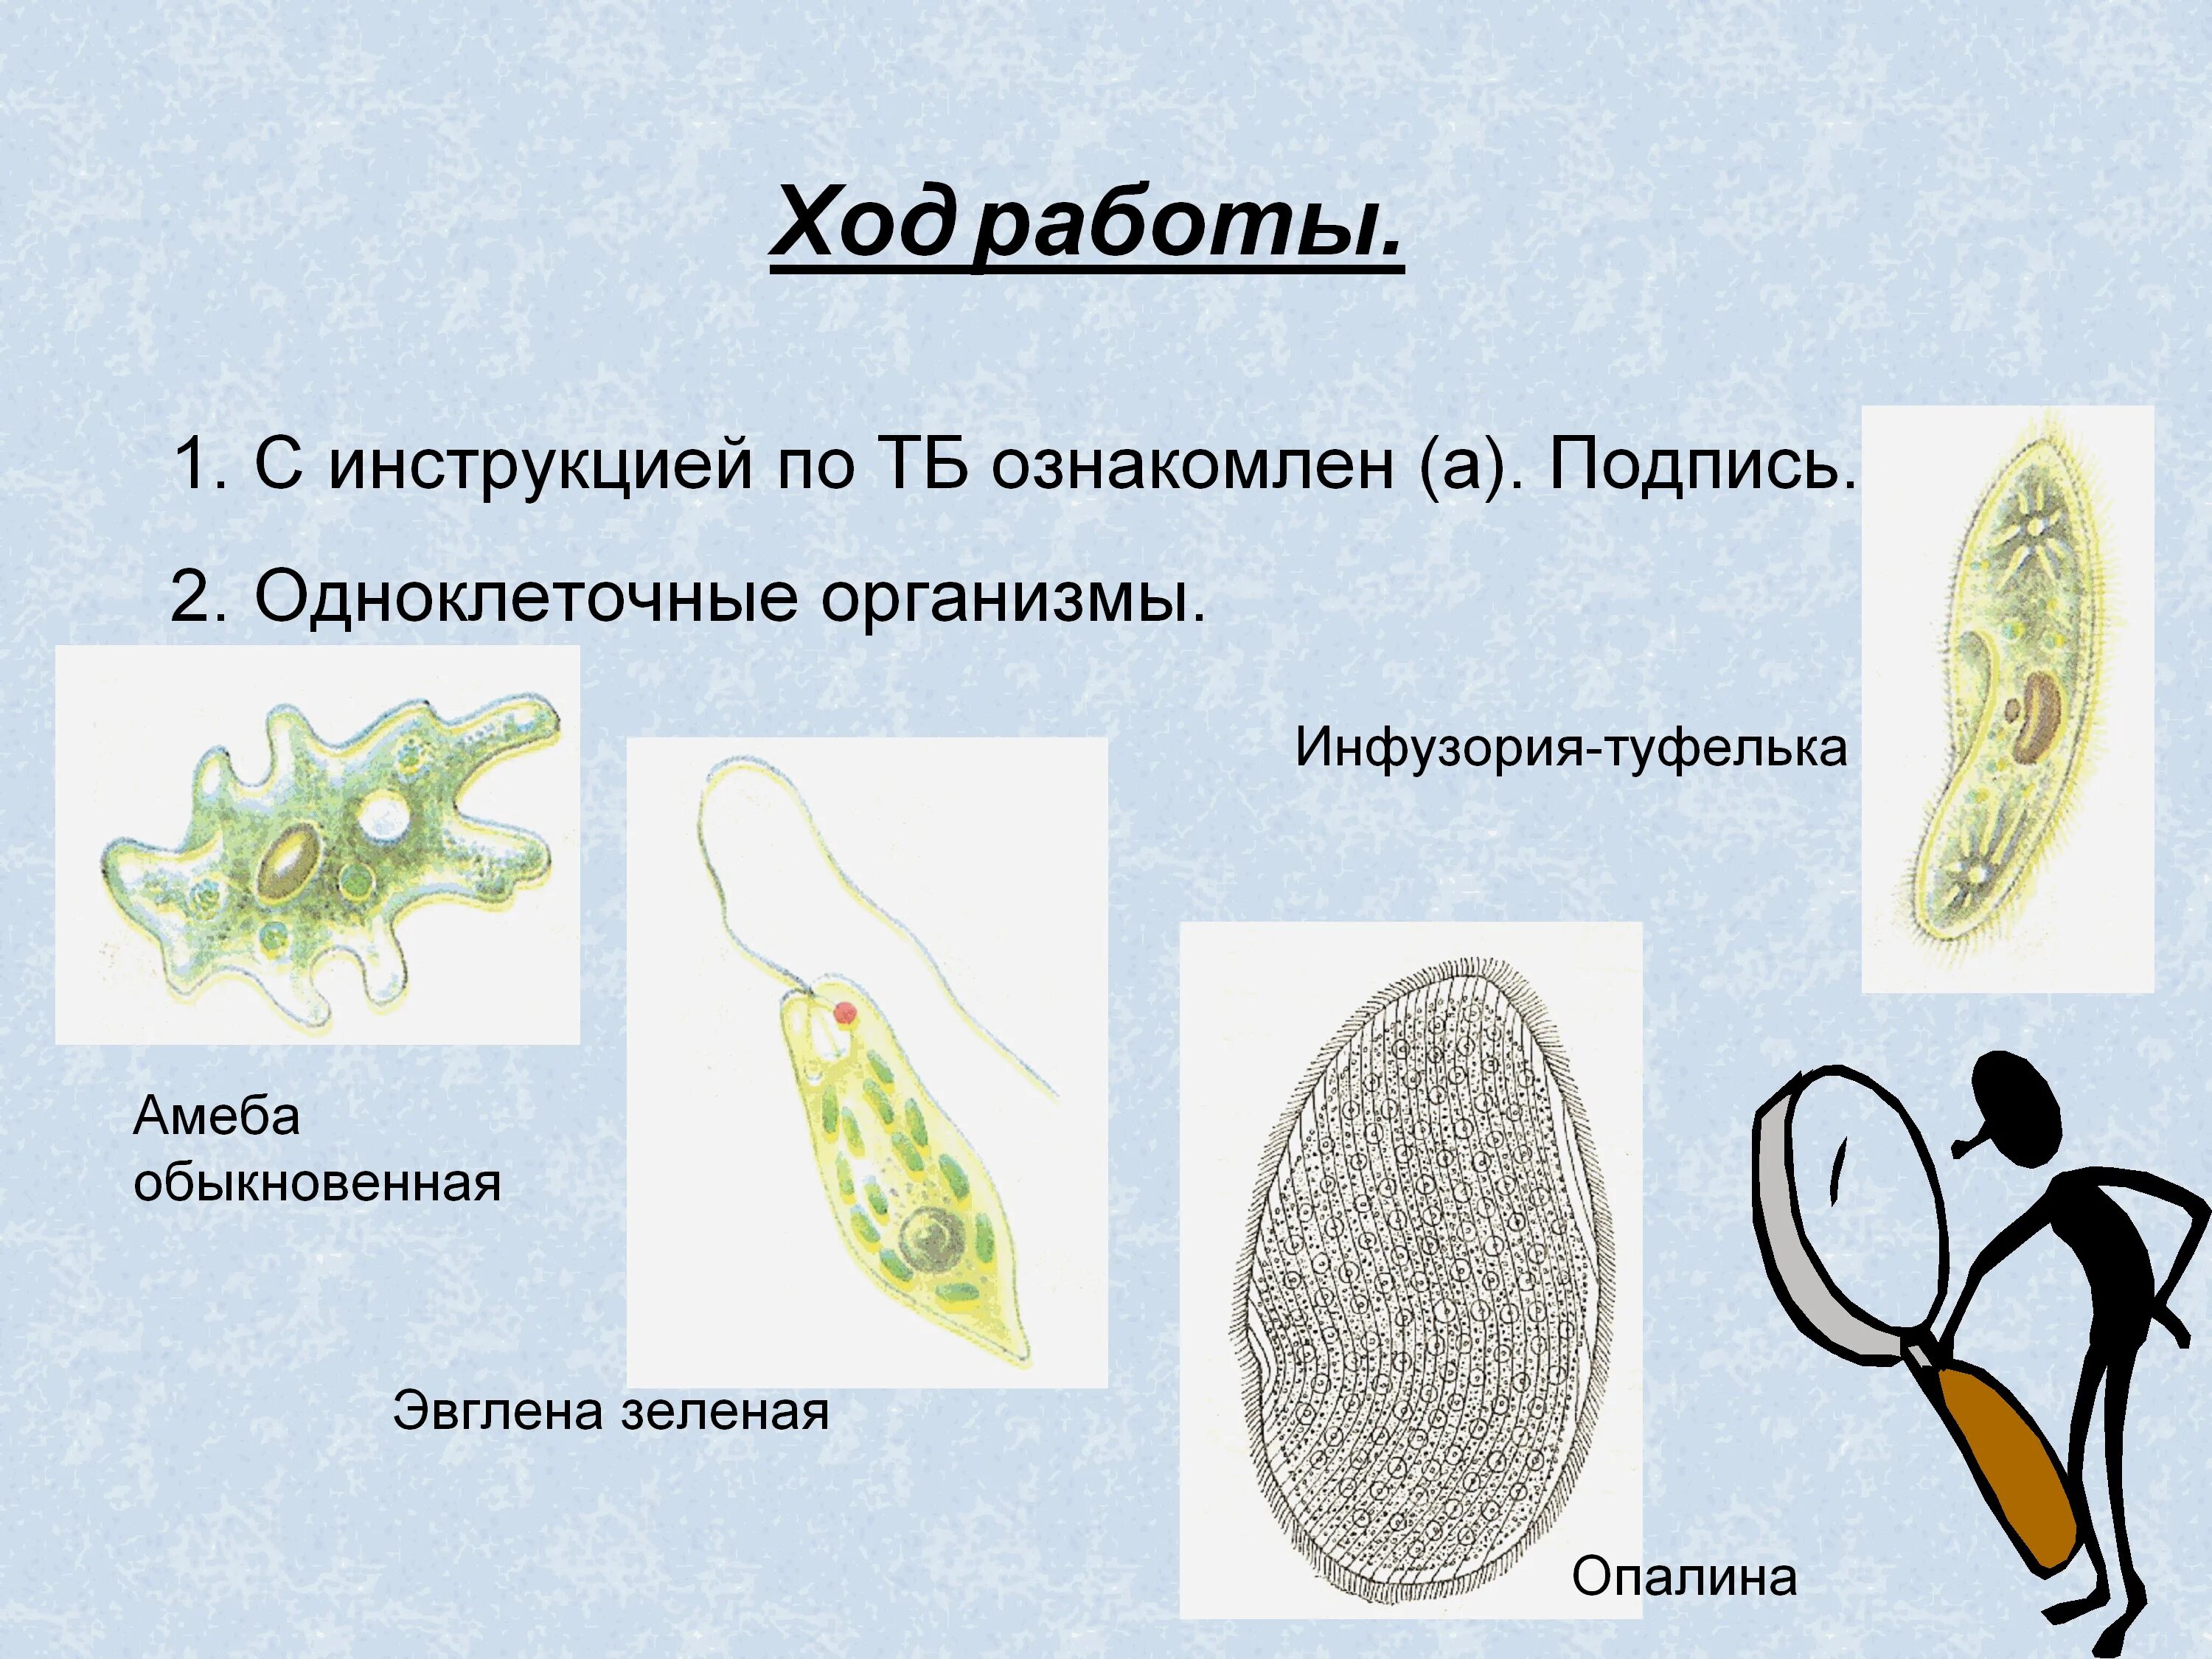 Одноклеточные организмы. Одноклеточные и многоклеточные организмы. Одноклеточные организмы и многоклеточные организмы. Одноклеточные и многоклеточные организмы под микроскопом.